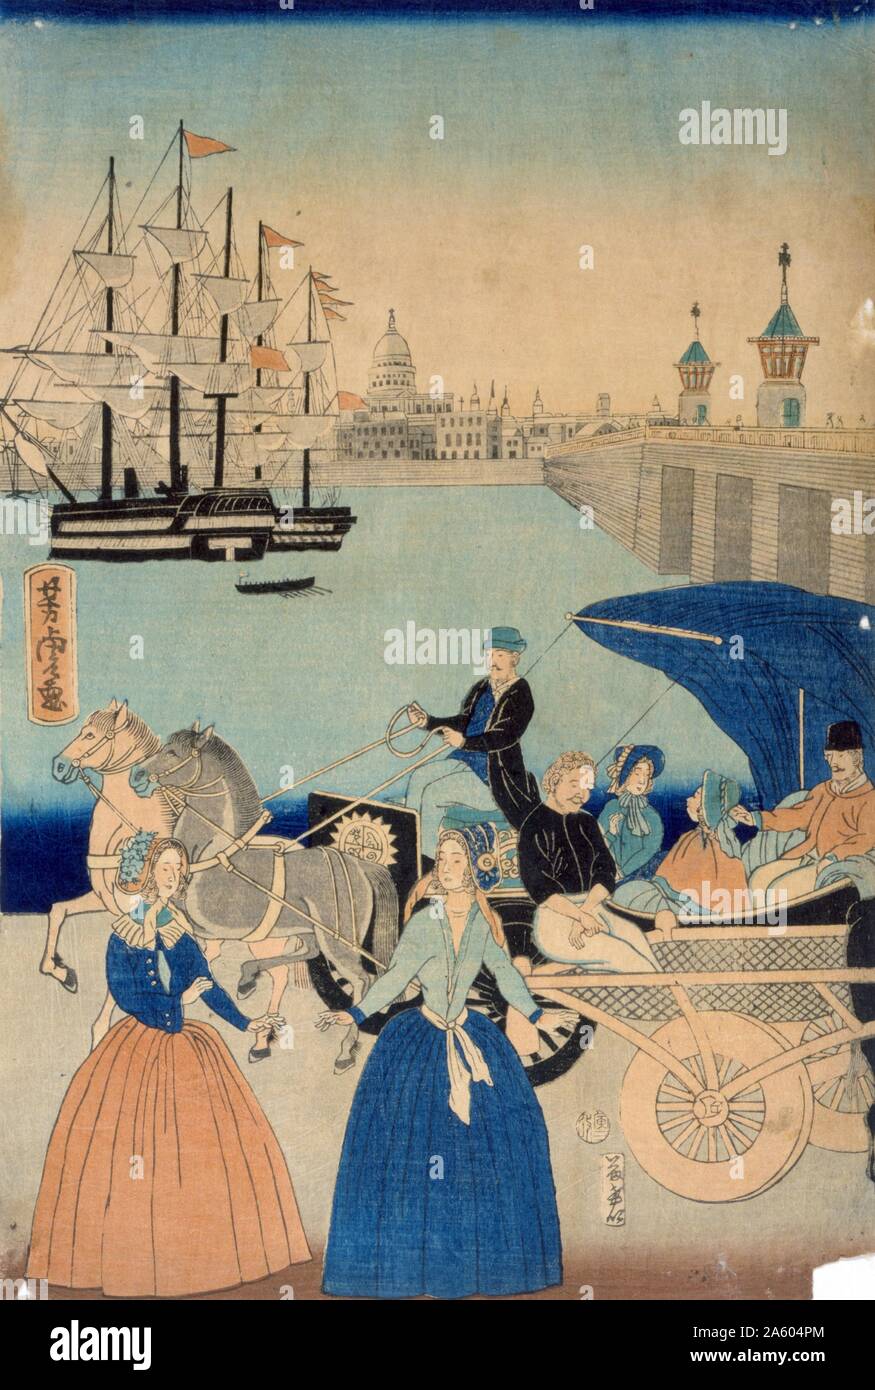 Igirisukoku Rondon keine zu (Bild von London, England). Von Utagawa Yoshitora, aktive 1850-1870, datiert 1866. Japanische Triptychon Drucken zeigt das Stadtbild auf London mit Fußgänger-Brücke über die Themse und Fahrzeugverkehr in den Vordergrund. Stockfoto